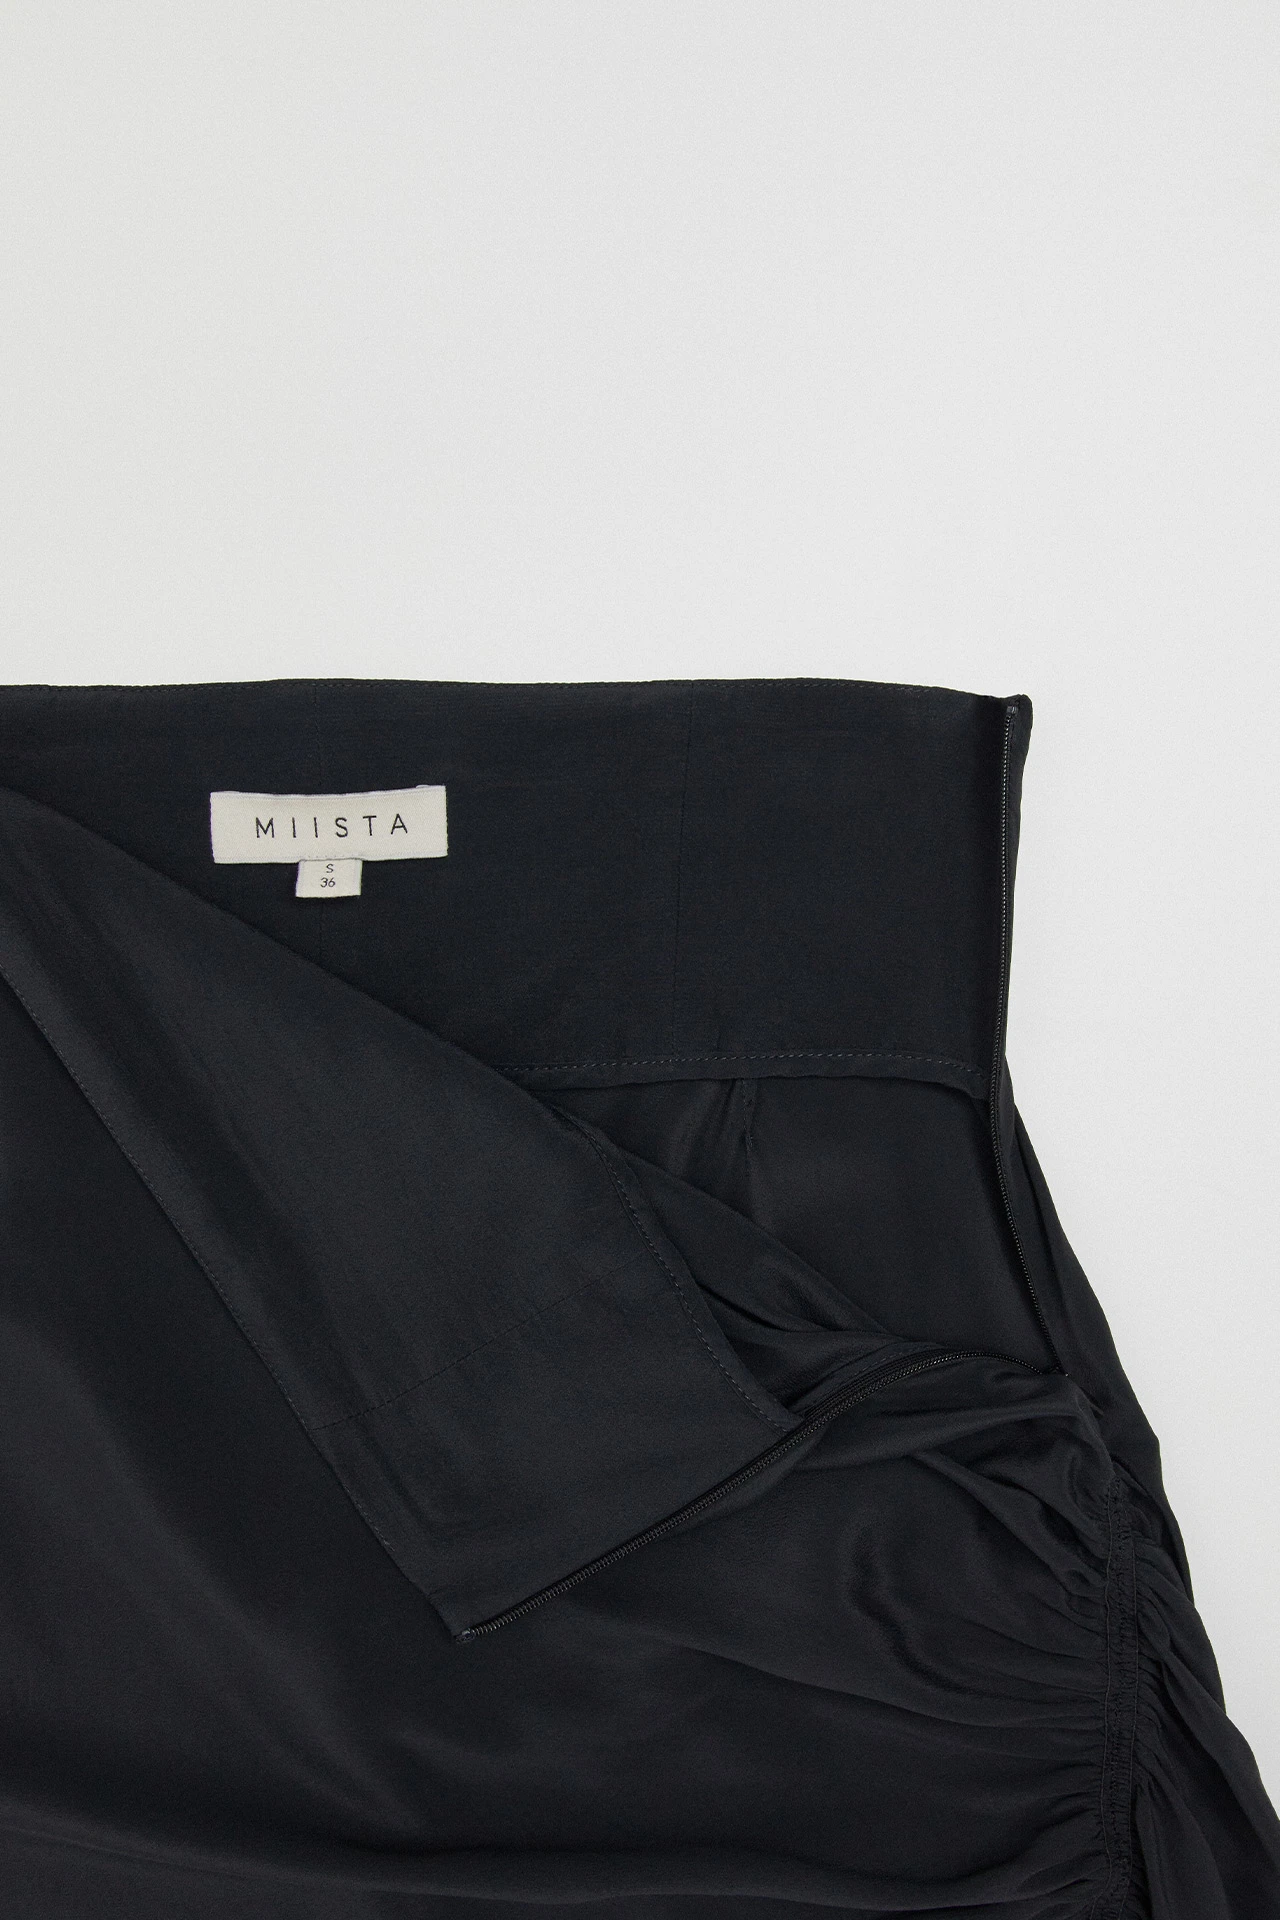 Miista-ze-black-skirt-03